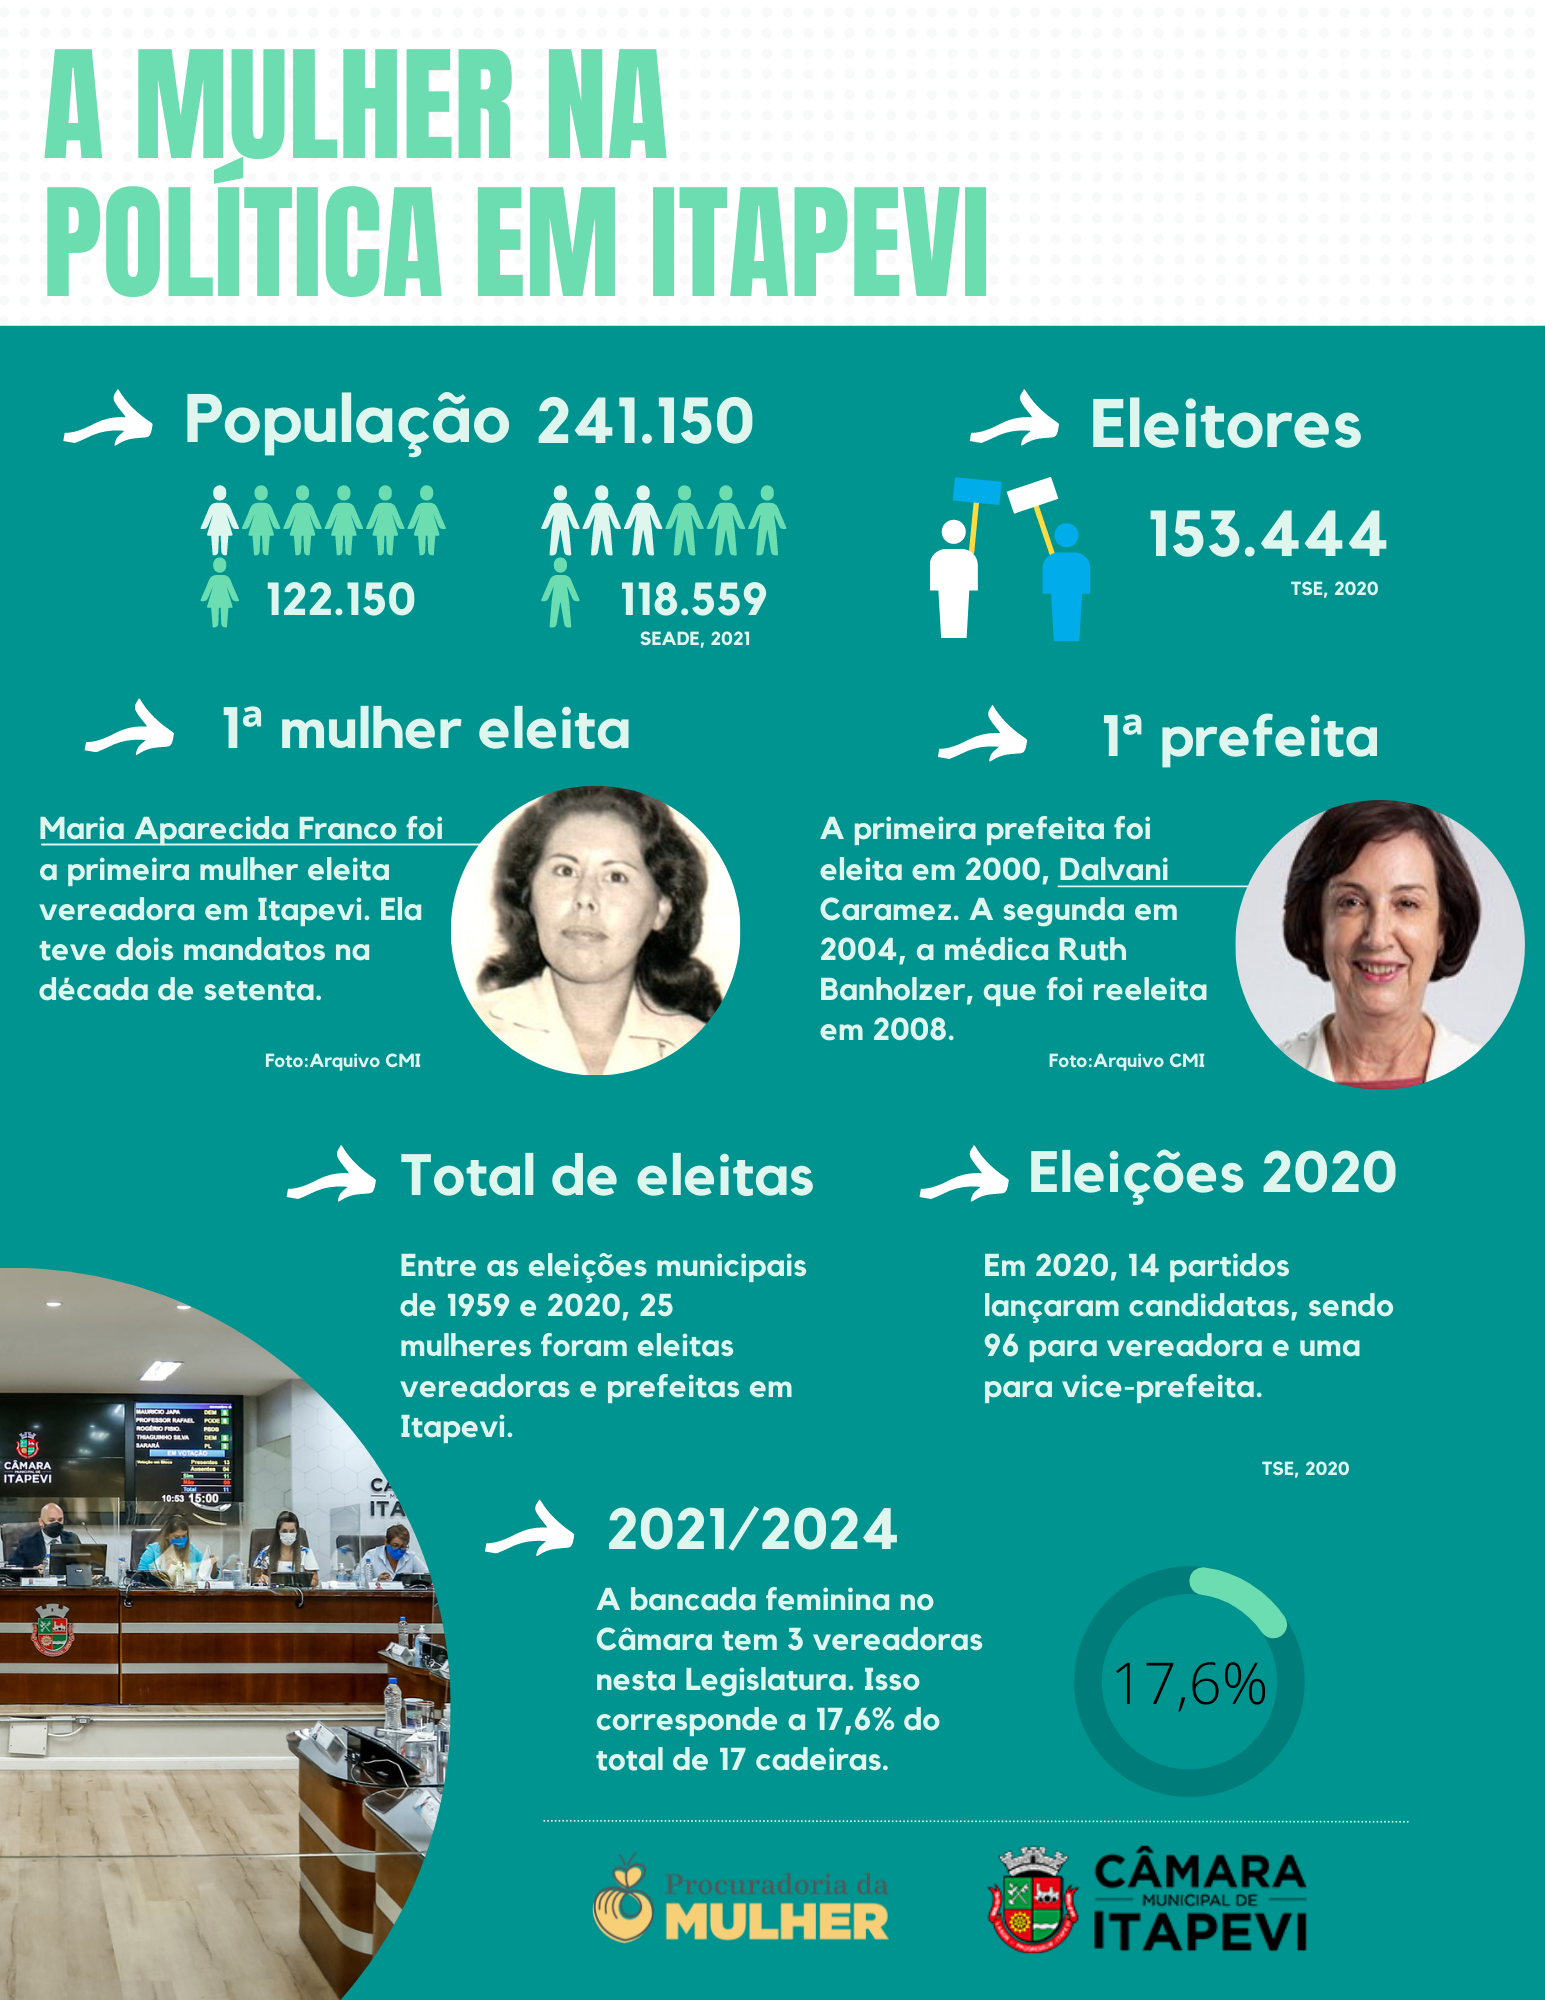 Dados sobre a presença da mulher na política em Itapevi.